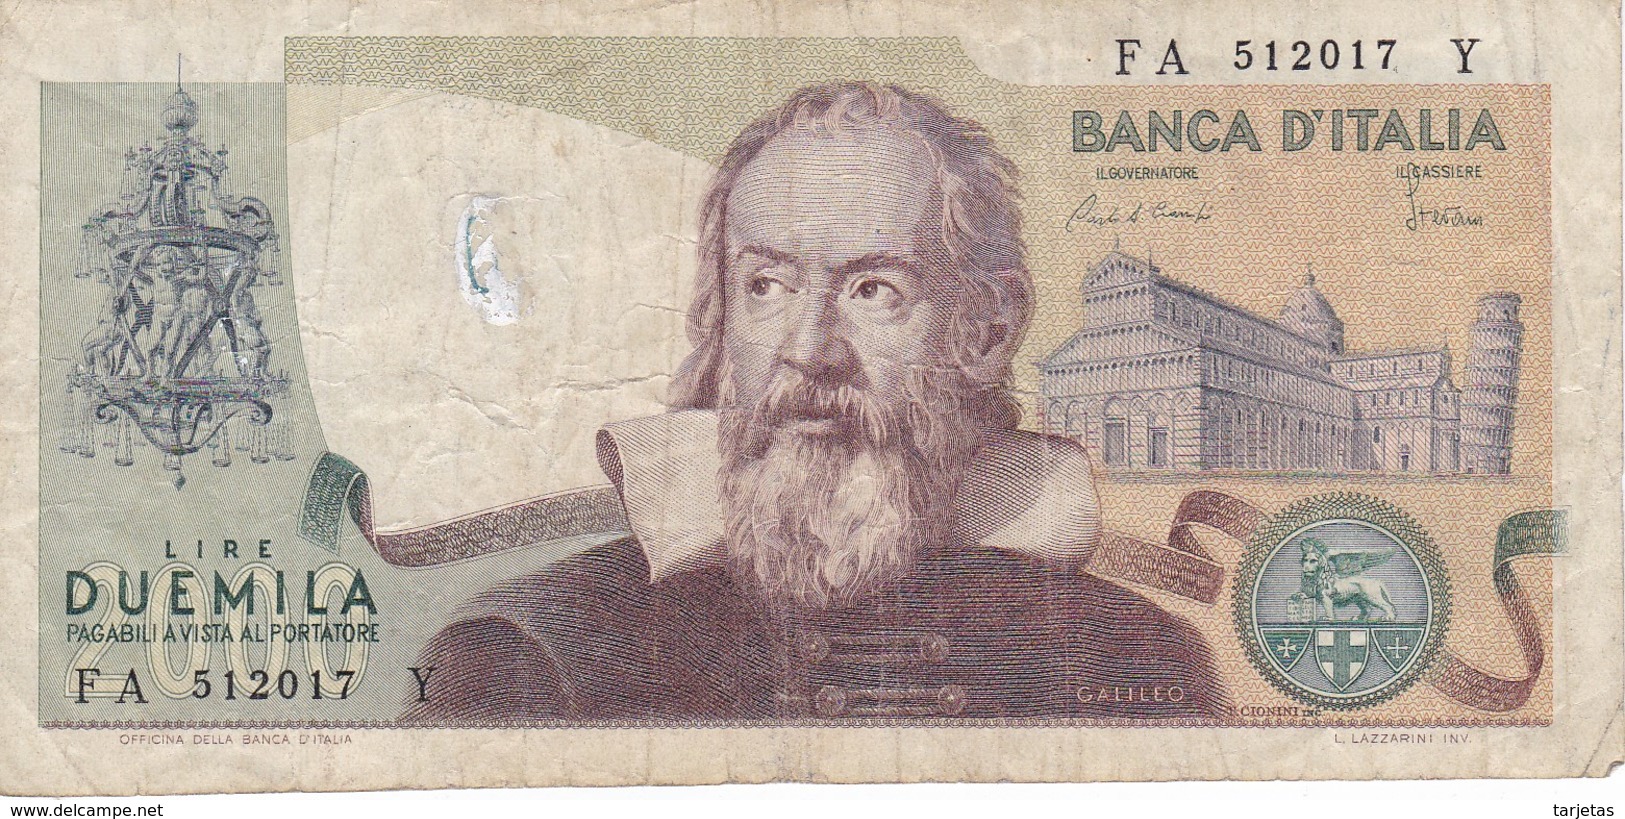 BILLETE DE ITALIA DE 2000 LIRAS DEL AÑO 1983  GALILEO  (BANKNOTE) - 2000 Lire